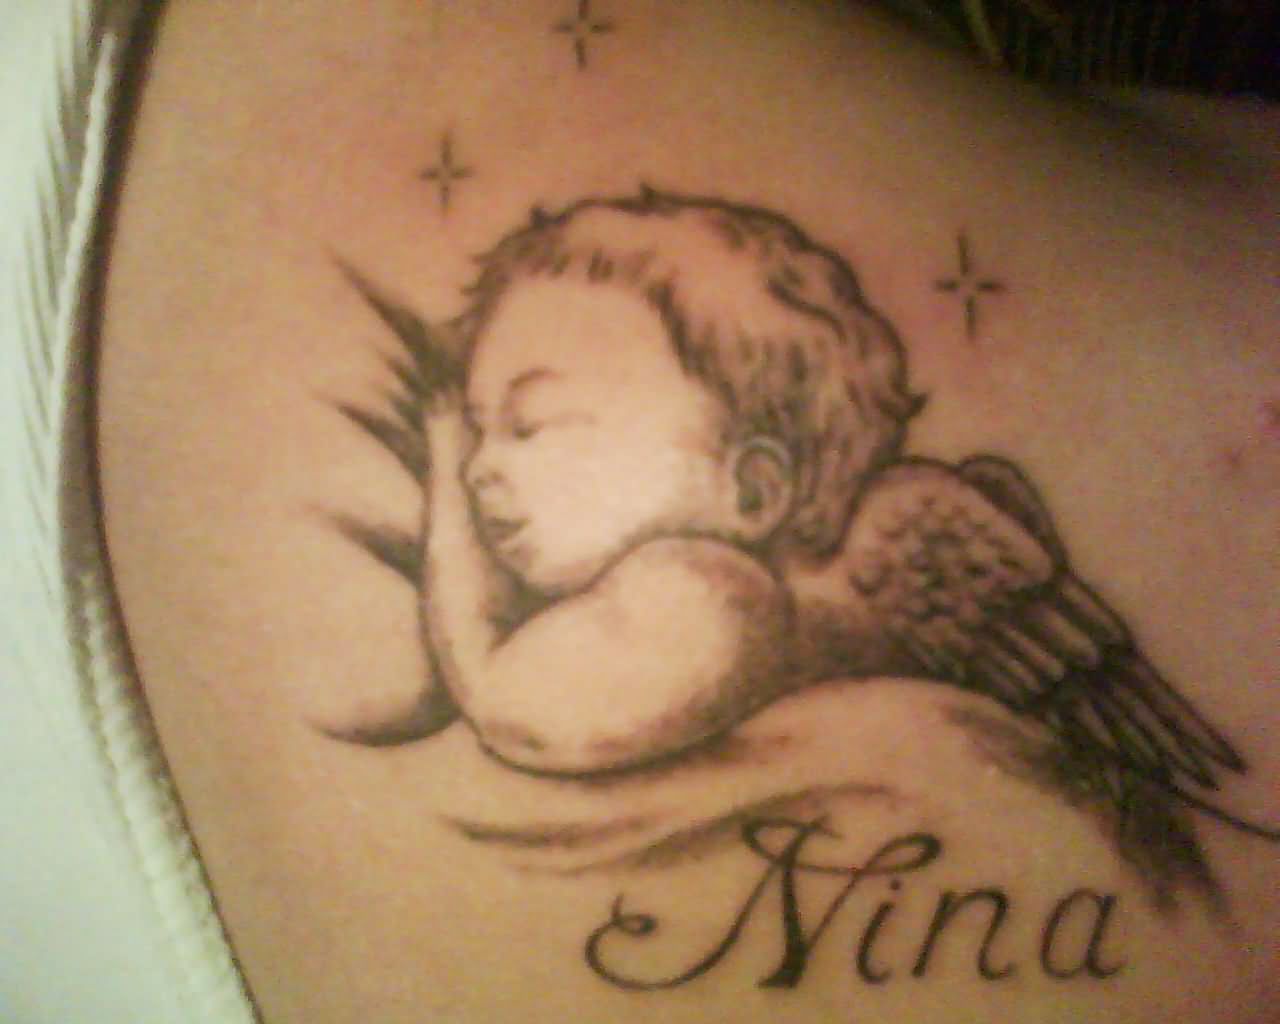 Nina - Cute Sleeping Baby Angel Tattoo Design